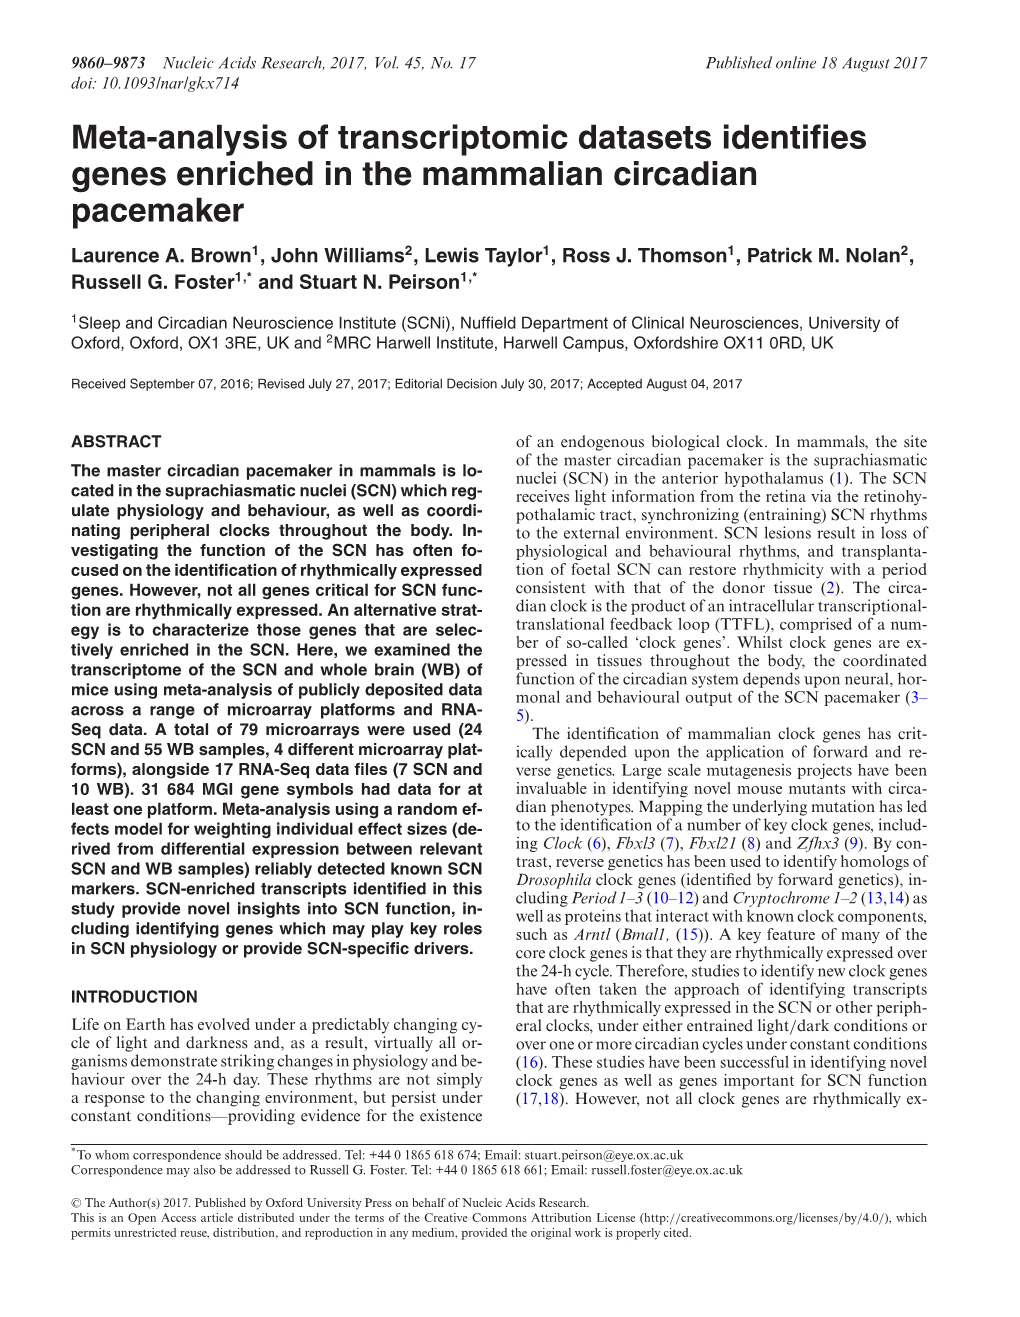 Meta-Analysis of Transcriptomic Datasets Identifies Genes Enriched